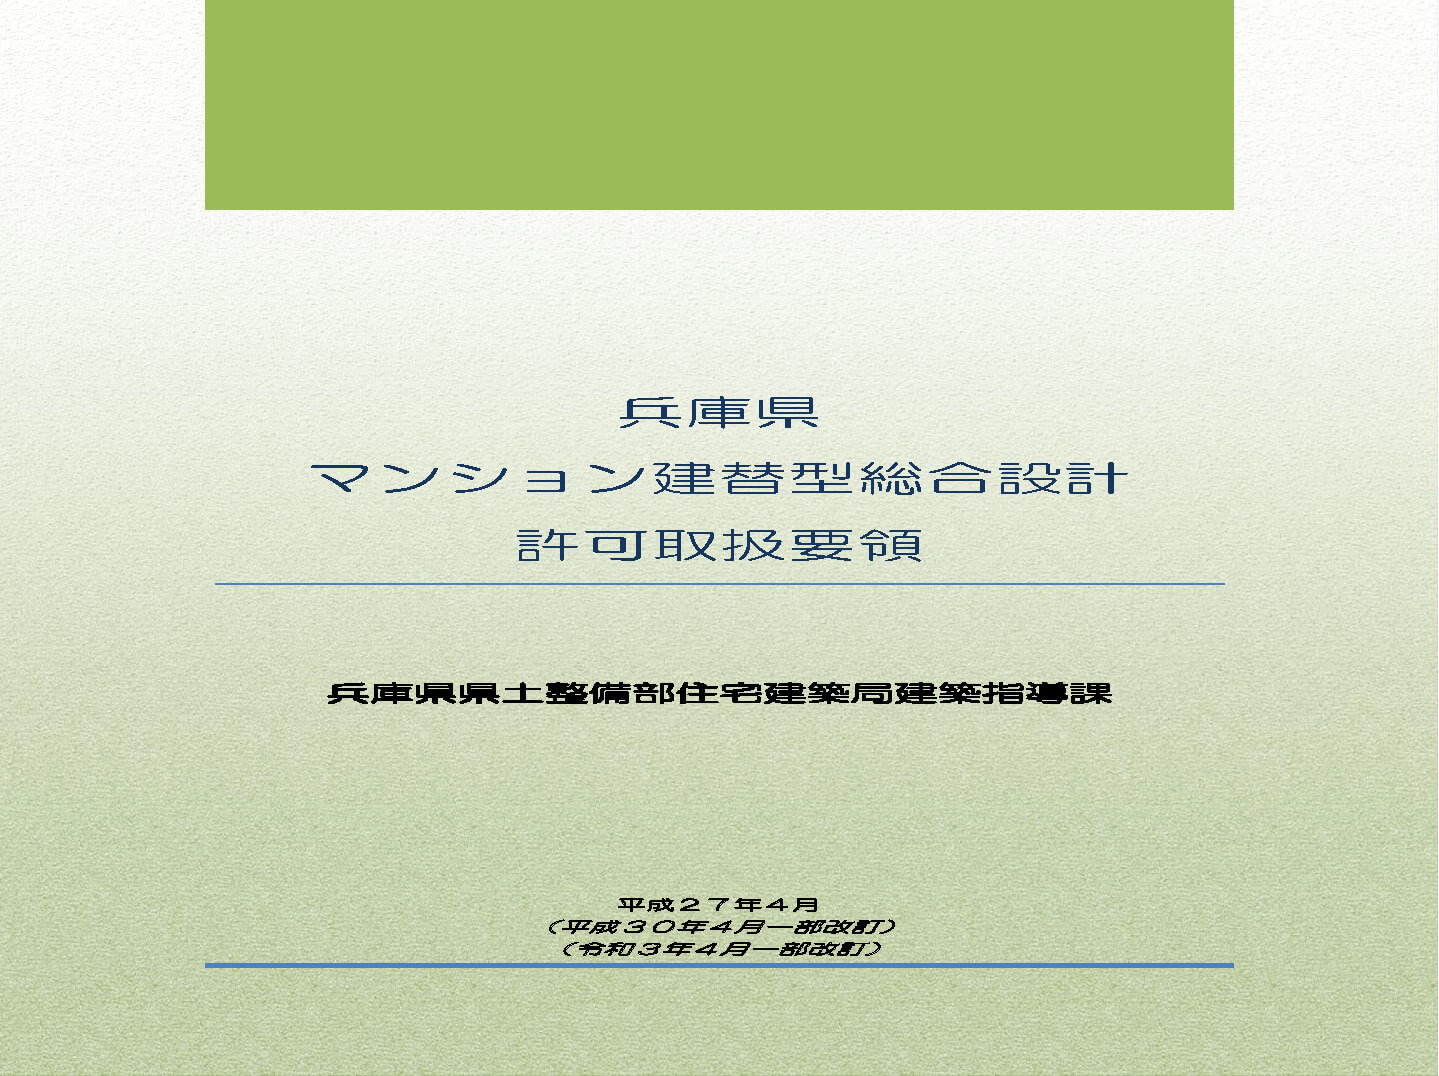 兵庫県マンション建替え型総合設計許可取得要領